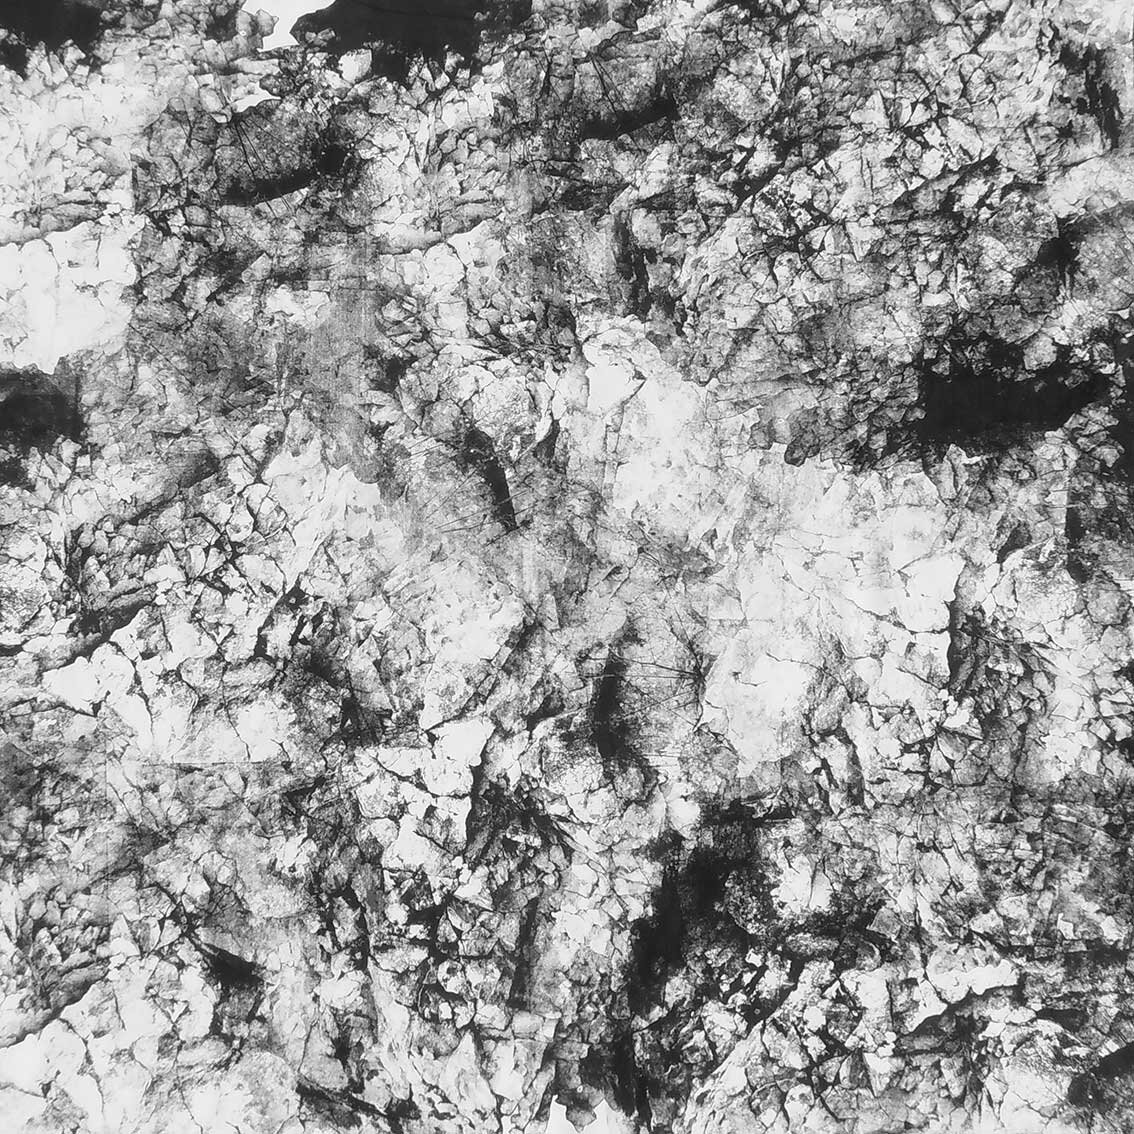  Kalksandstein 2/ Mutationen  Material: Baumwolle auf Keilrahmen  Format: 1.40mx1.40m 